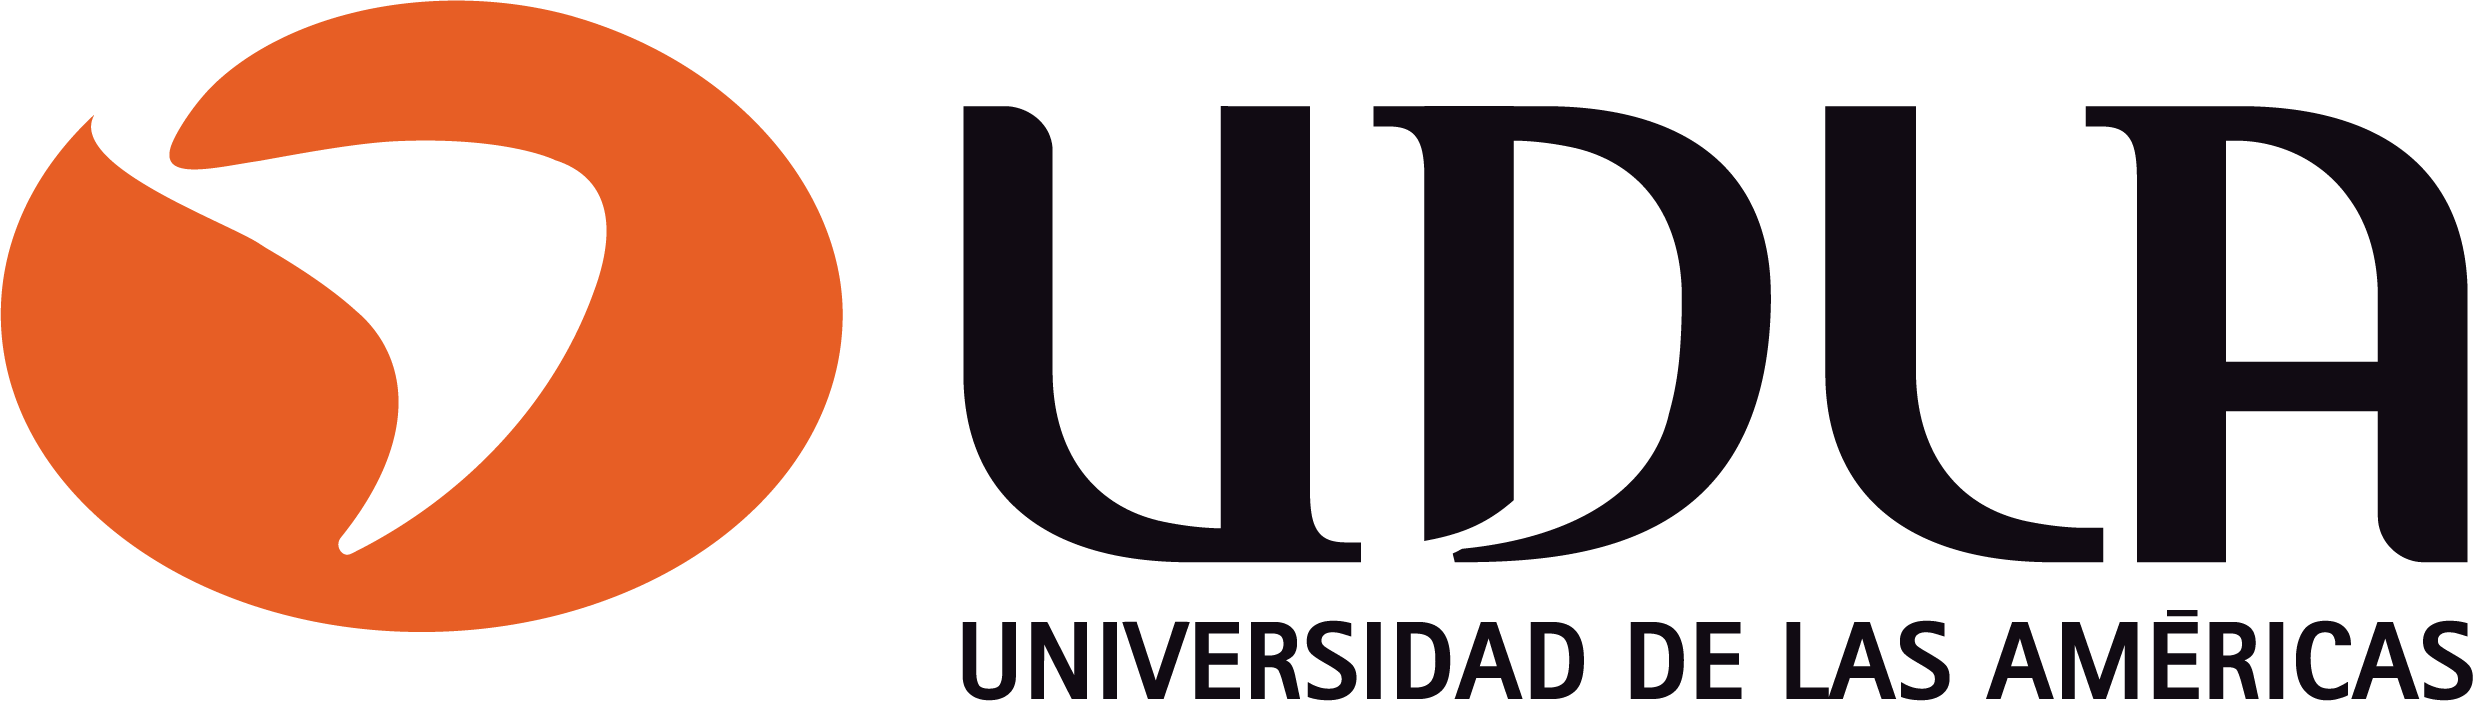 UDLA universidad de Las Américas